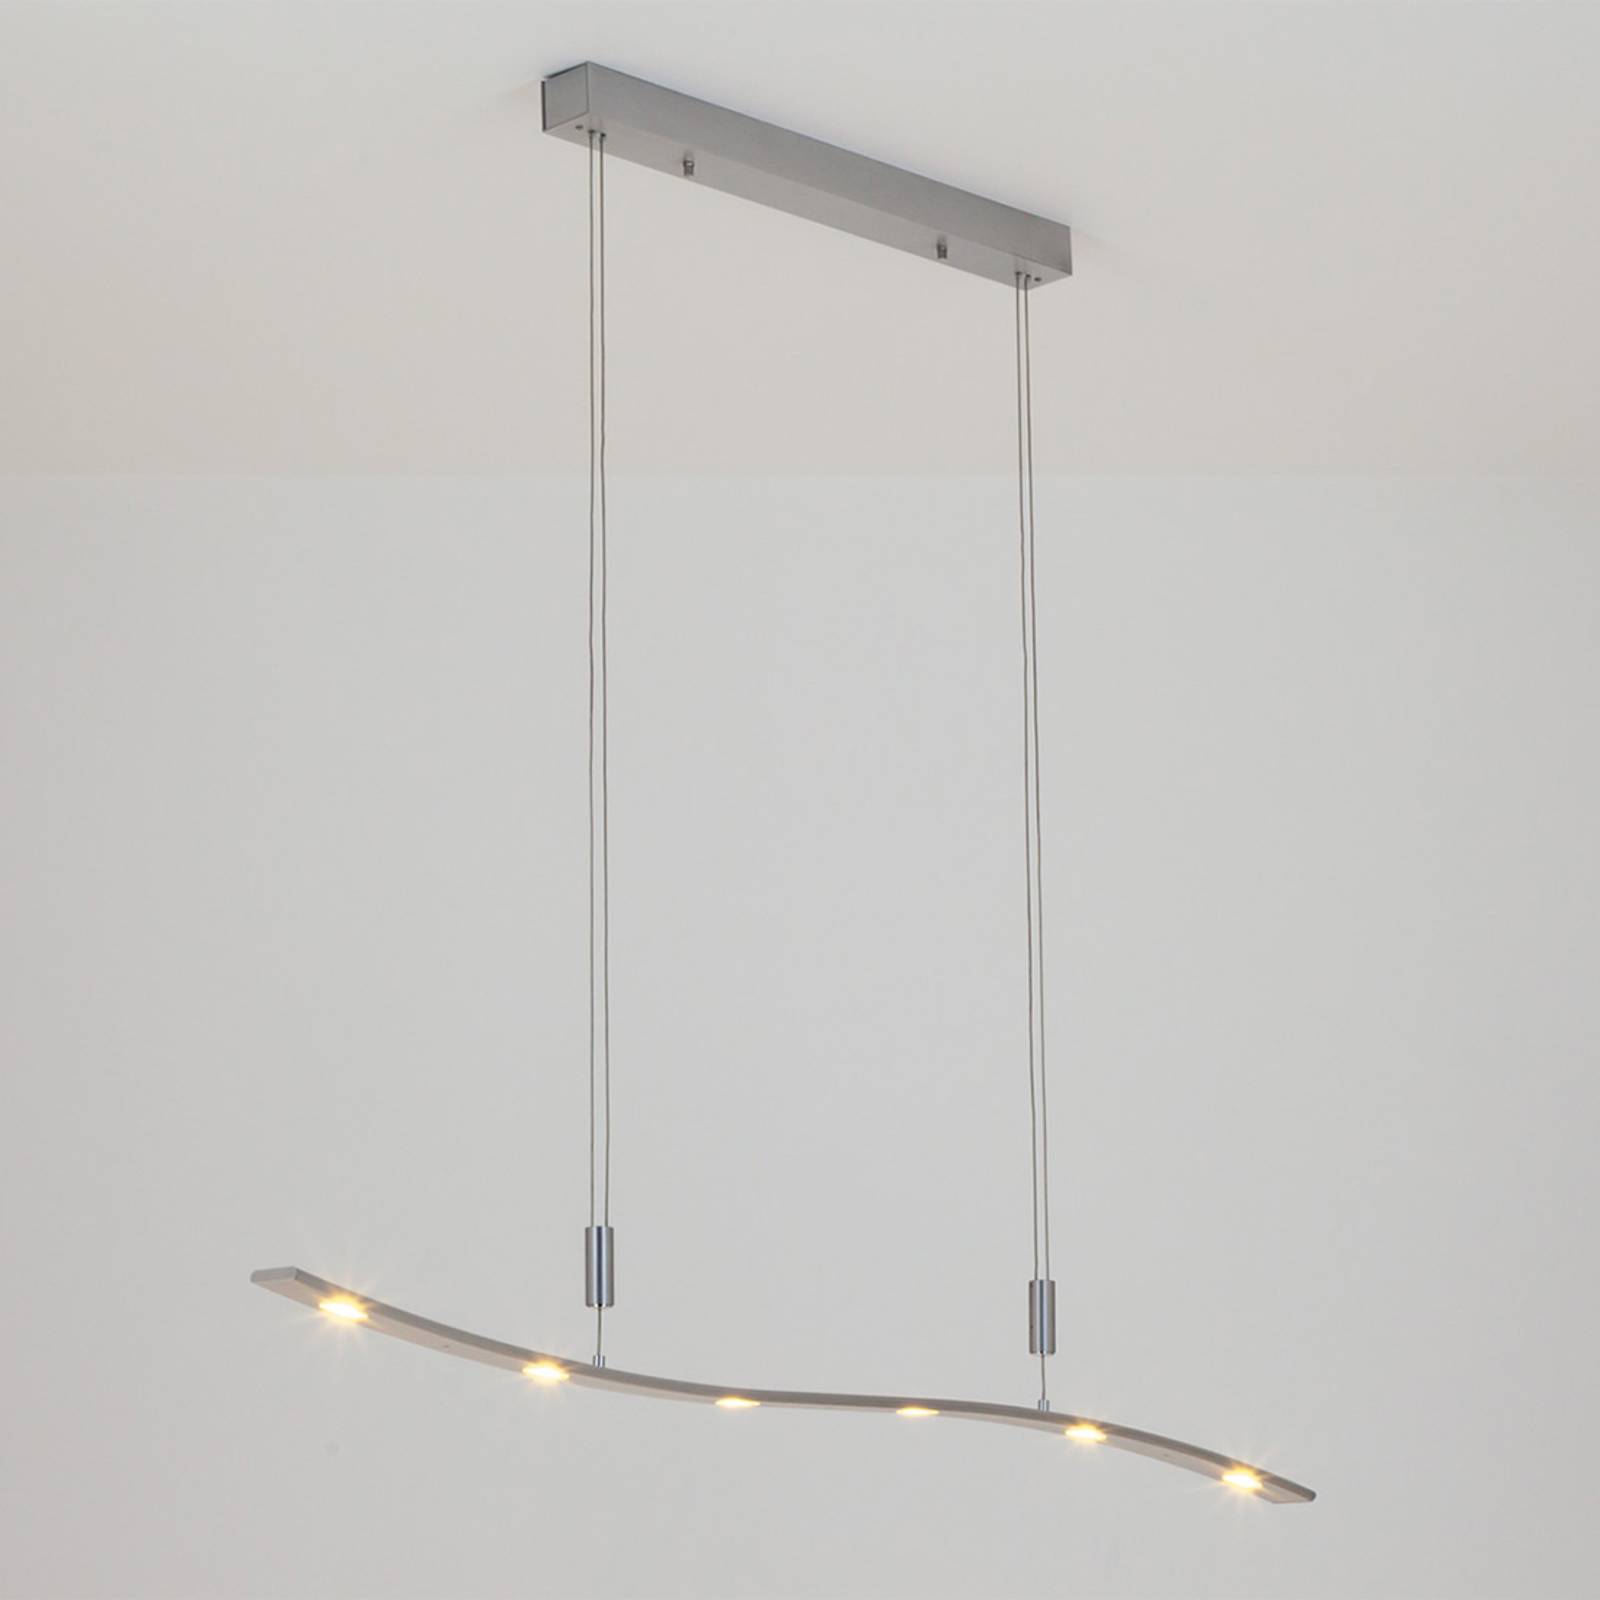 Xalu LED Pendant Lamp, Height-Adjustable 120 cm